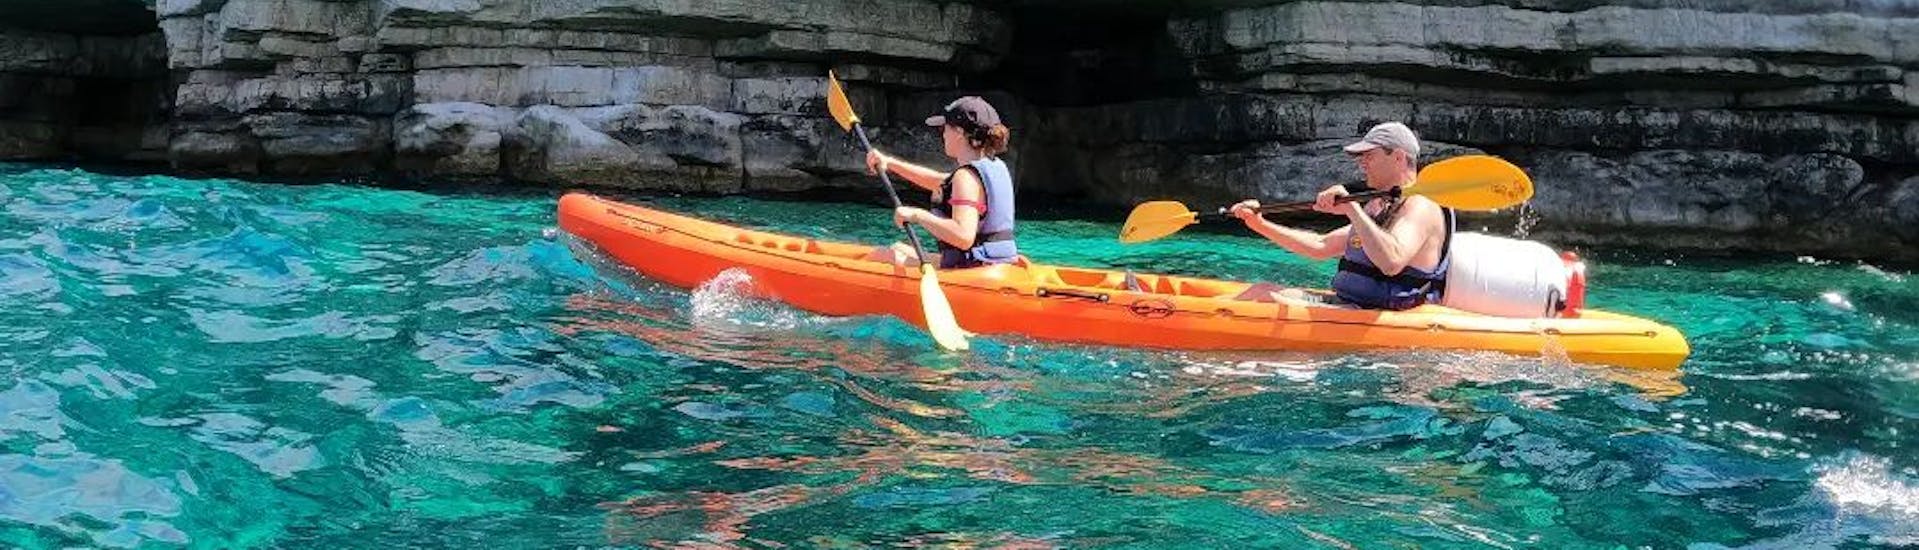 Kayak de mer dans les eaux bleues de la mer Adriatique devant une grotte pendant l'excursion en kayak de mer dans les grottes de Pula par Pula Adventure Team.